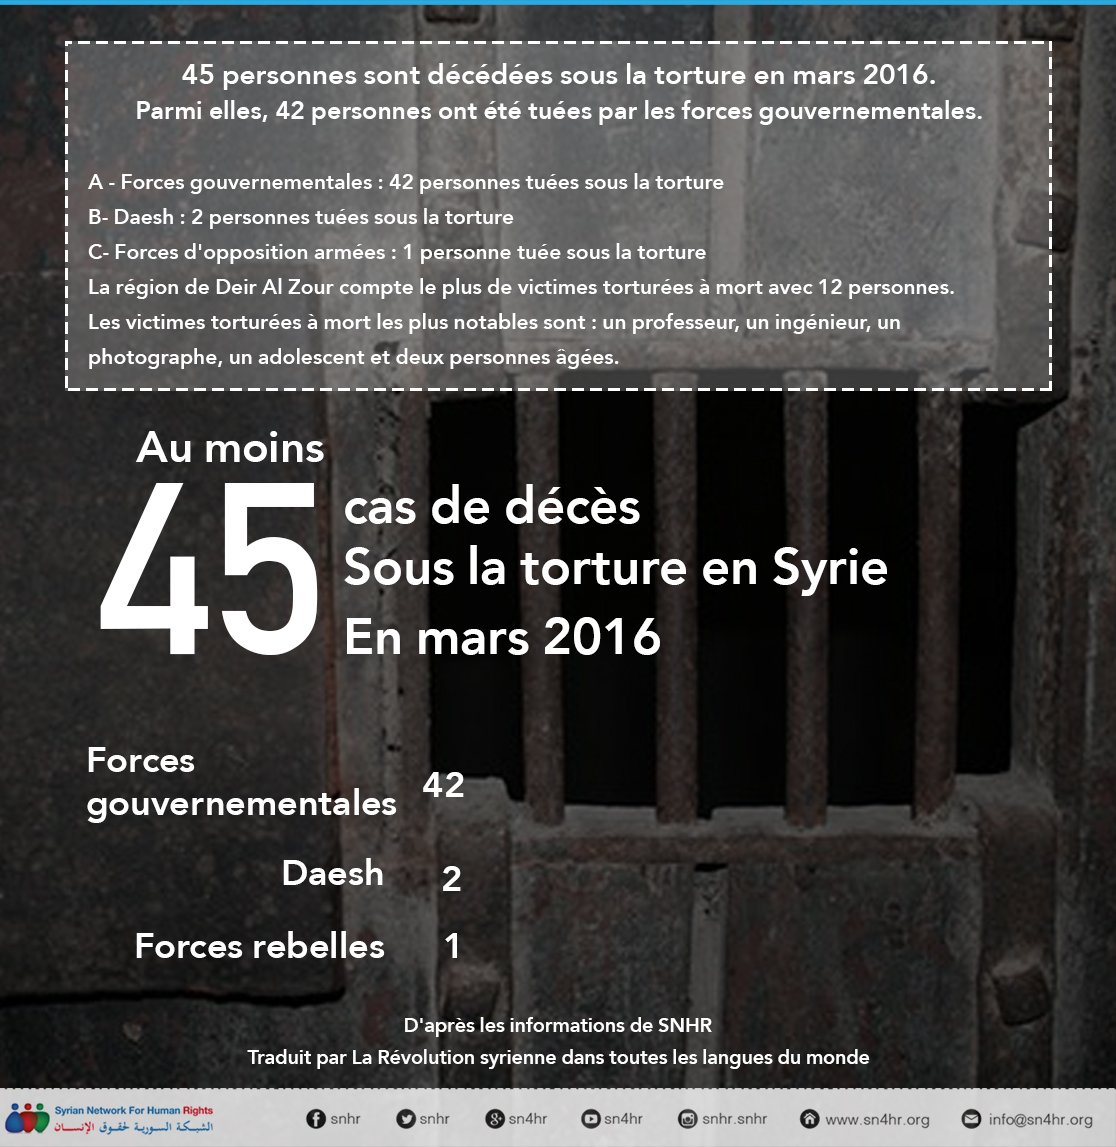 45 personnes sont décédées sous la torture en mars 2016